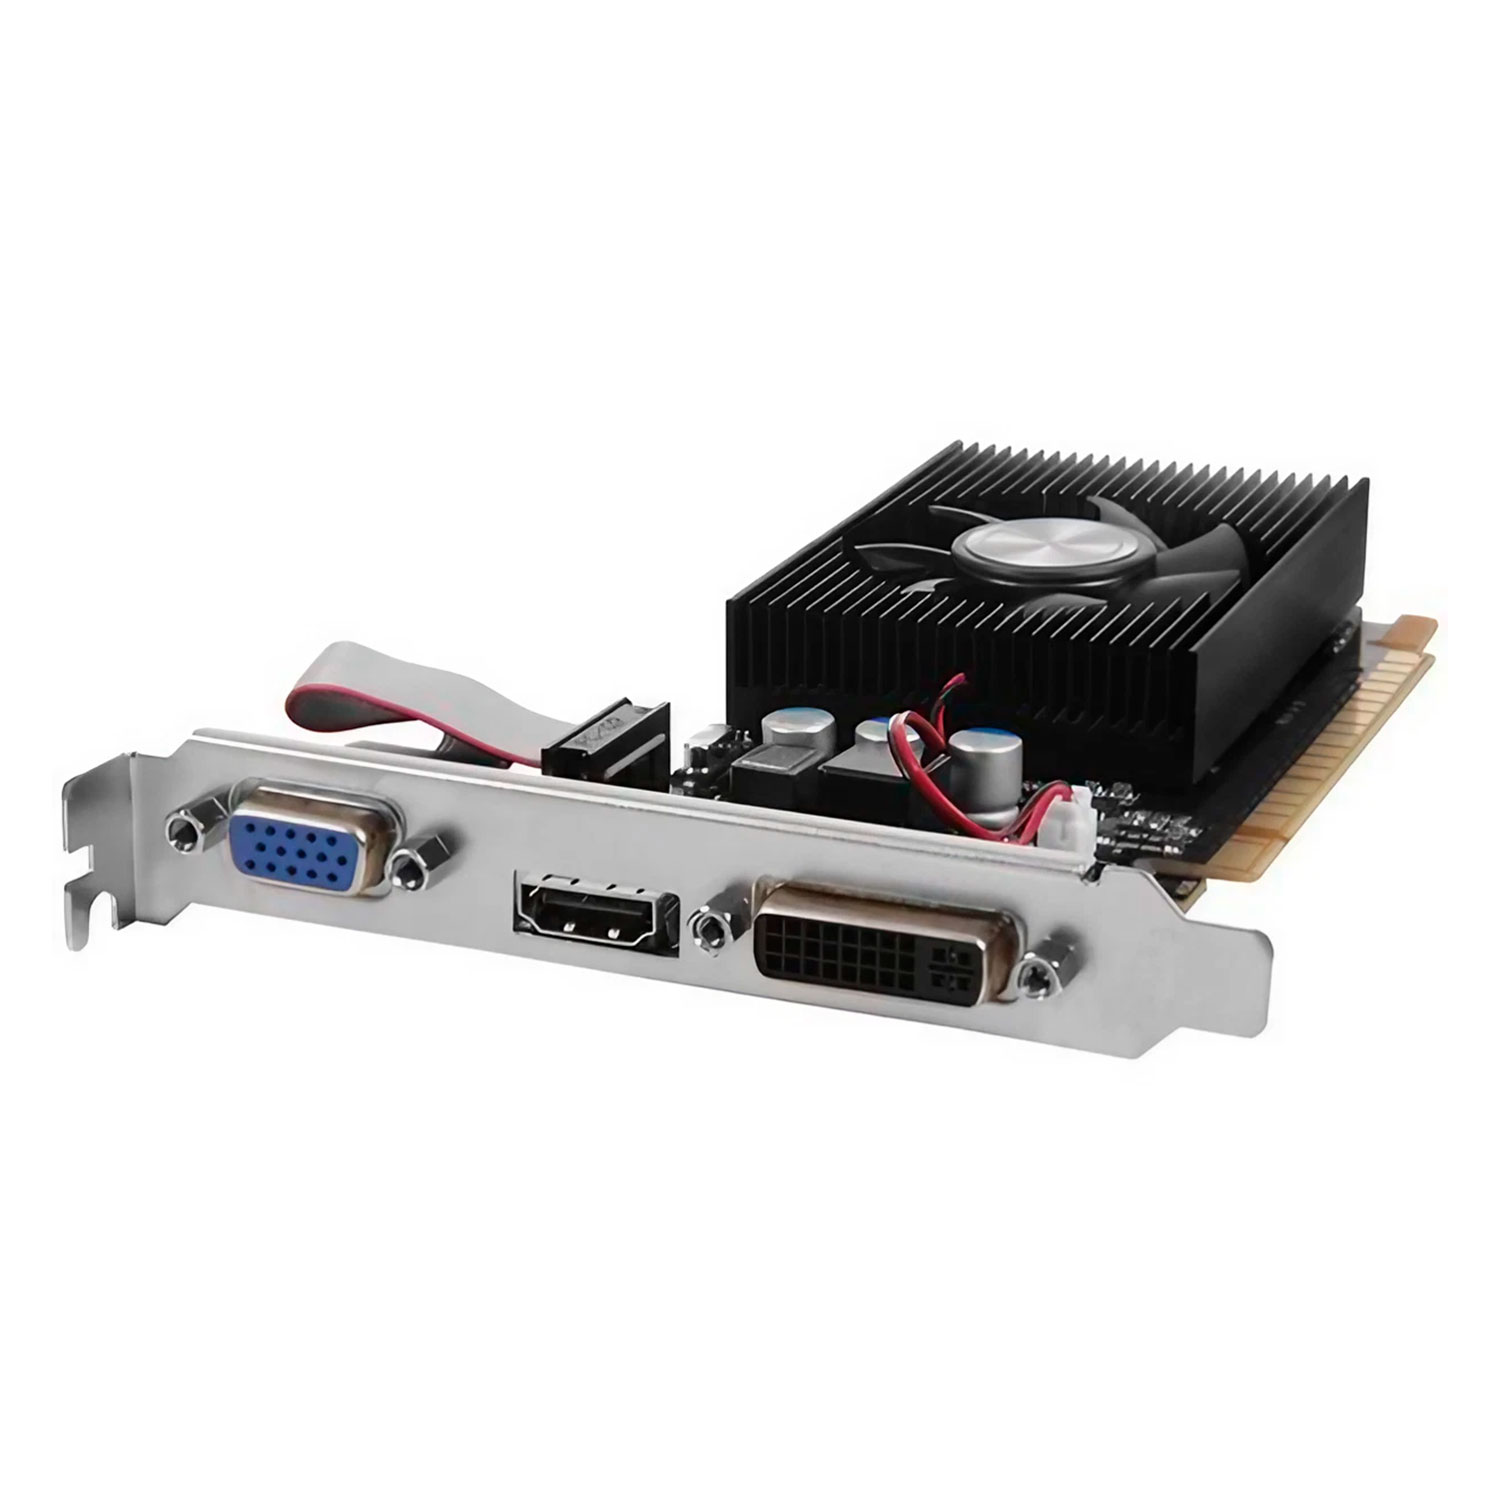 Placa de Vídeo Afox NVIDIA GeForce GT 420 4GB DDR3 - AF420-4096D3L2